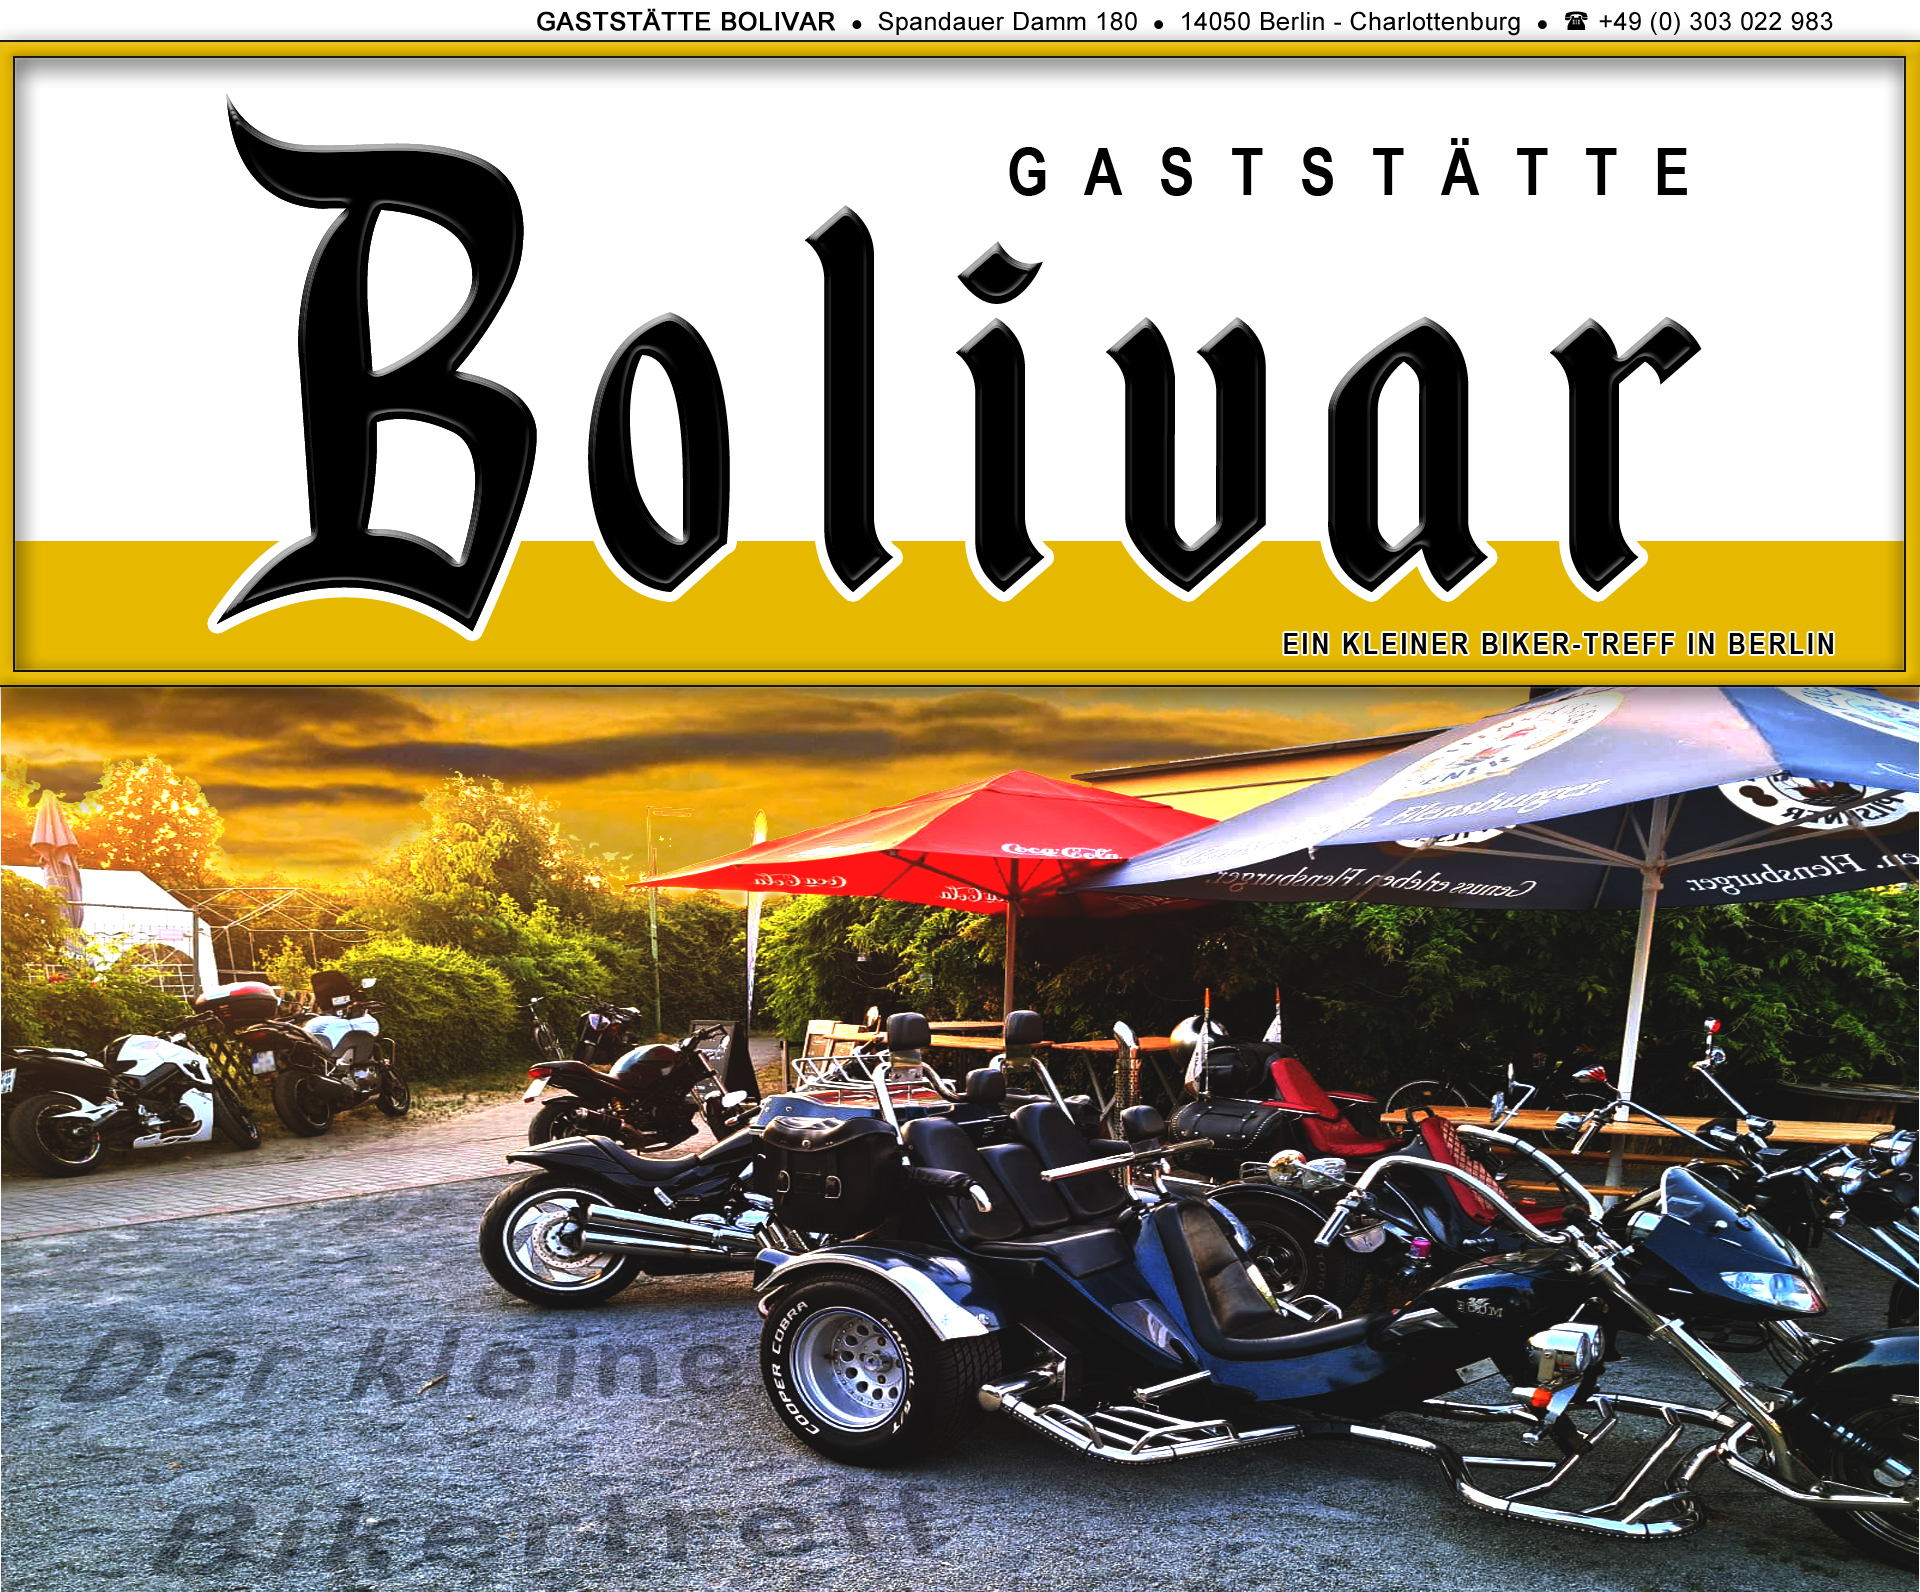 bolivar-berlin-charlottenburg-biker-bikerin-treff-a100-avus-treffpunkt-biergarten-imbiss-gaststaette-lokal-kaffee-kuchen-spandau